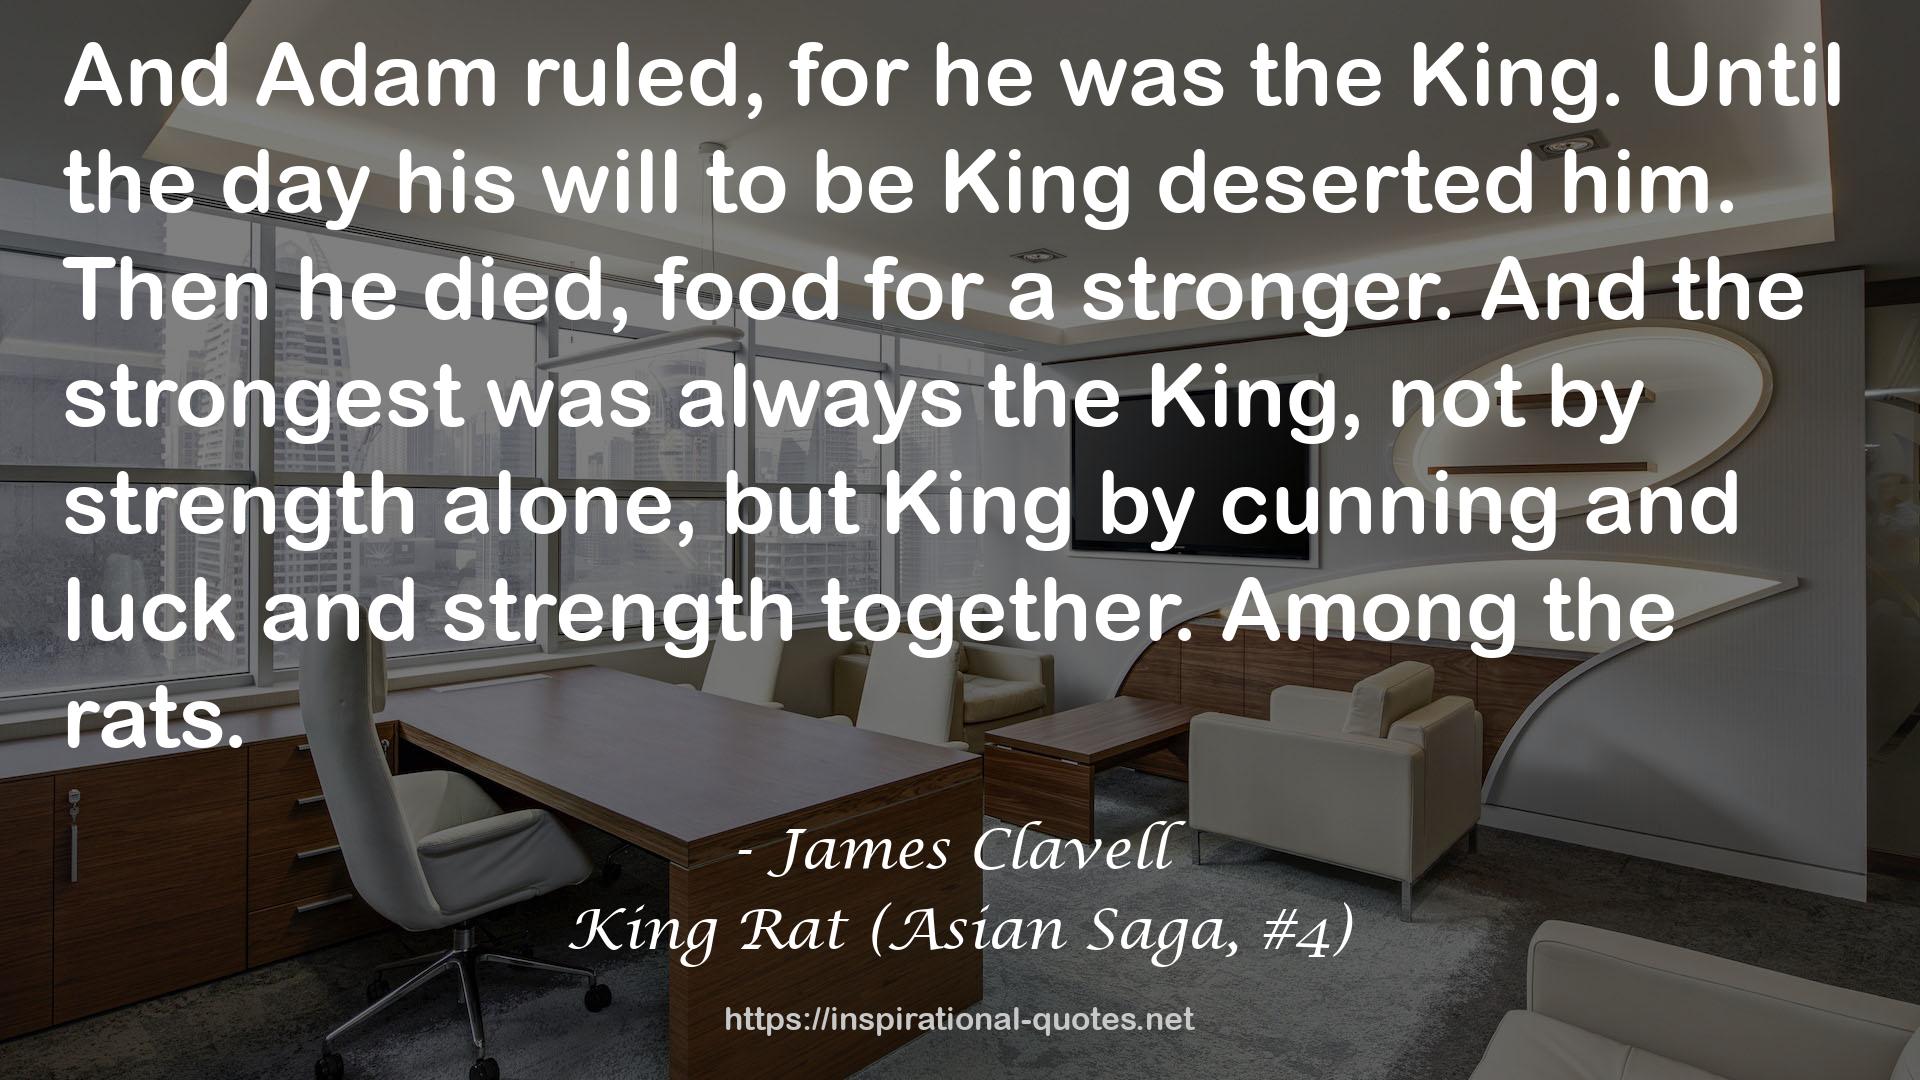 King Rat (Asian Saga, #4) QUOTES